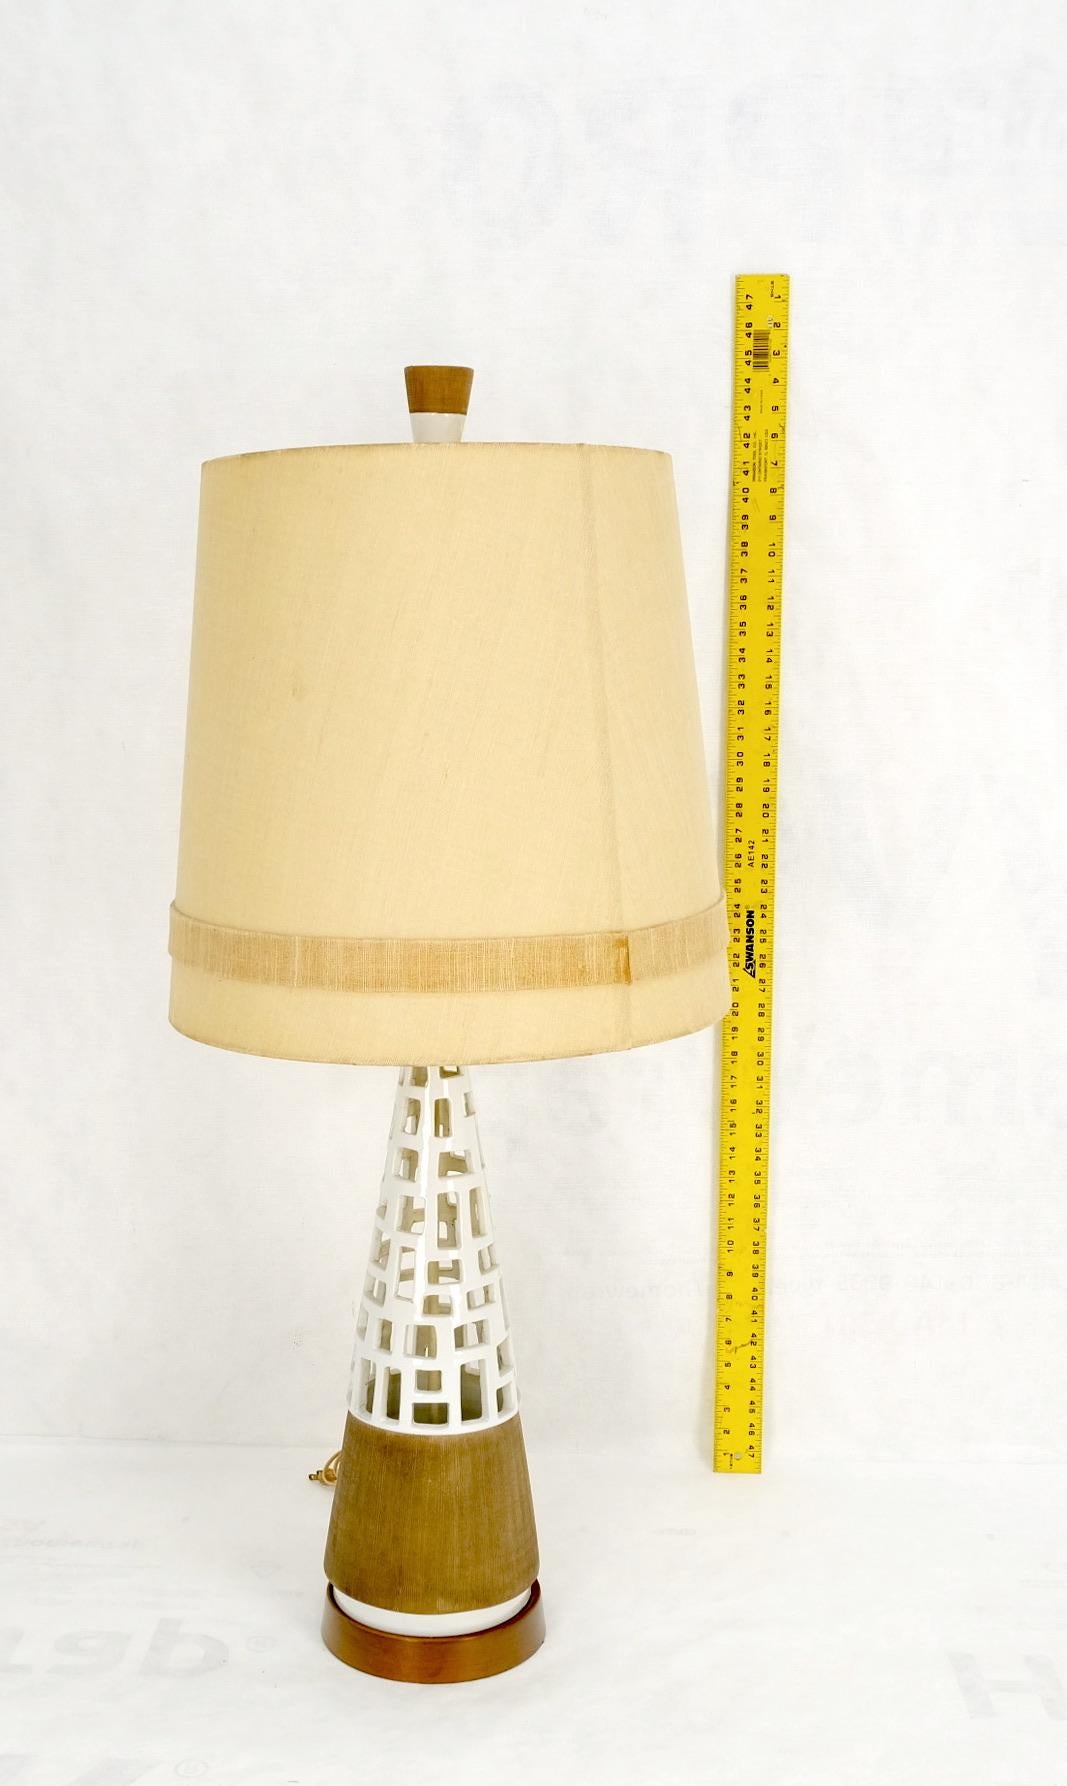 Mid-Century Modern cone shape Geometrical pattern pierce pattern base table lamp on walnut base.
3 sockets fixture.